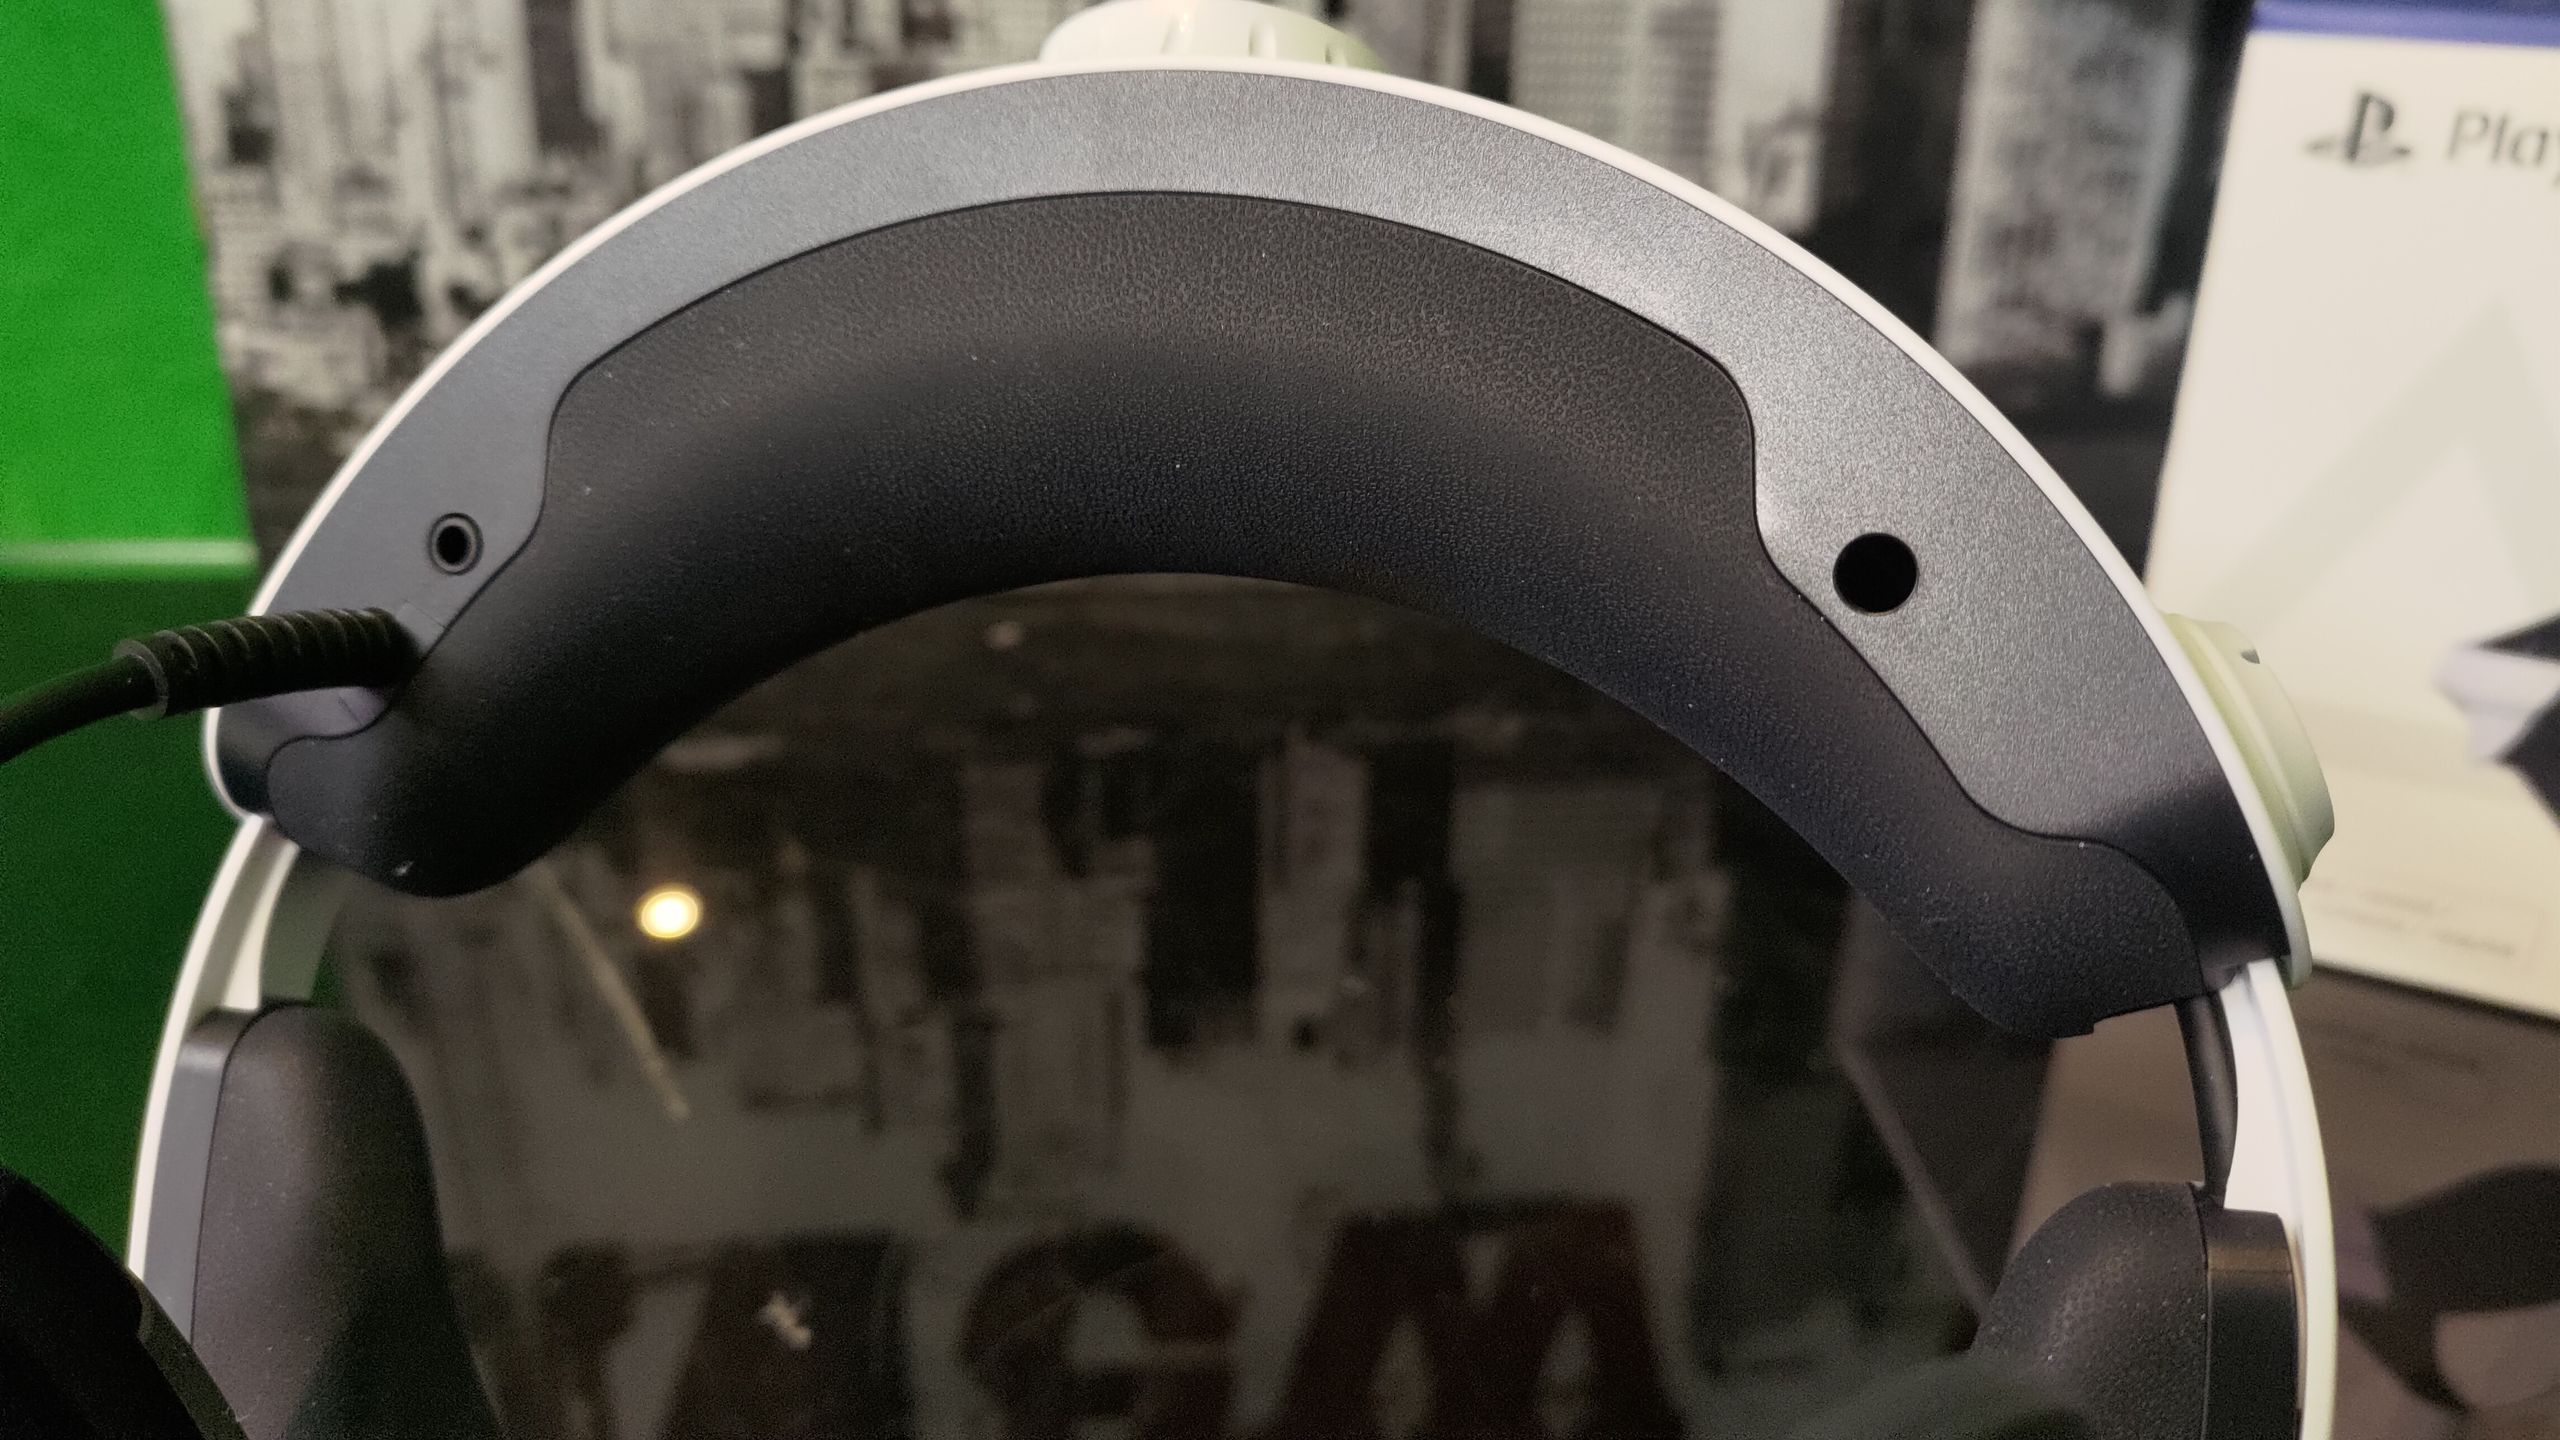 UNBOXING PSVR 2 : nous avons déballé le nouveau casque VR PlayStation de la  PS5 ! 